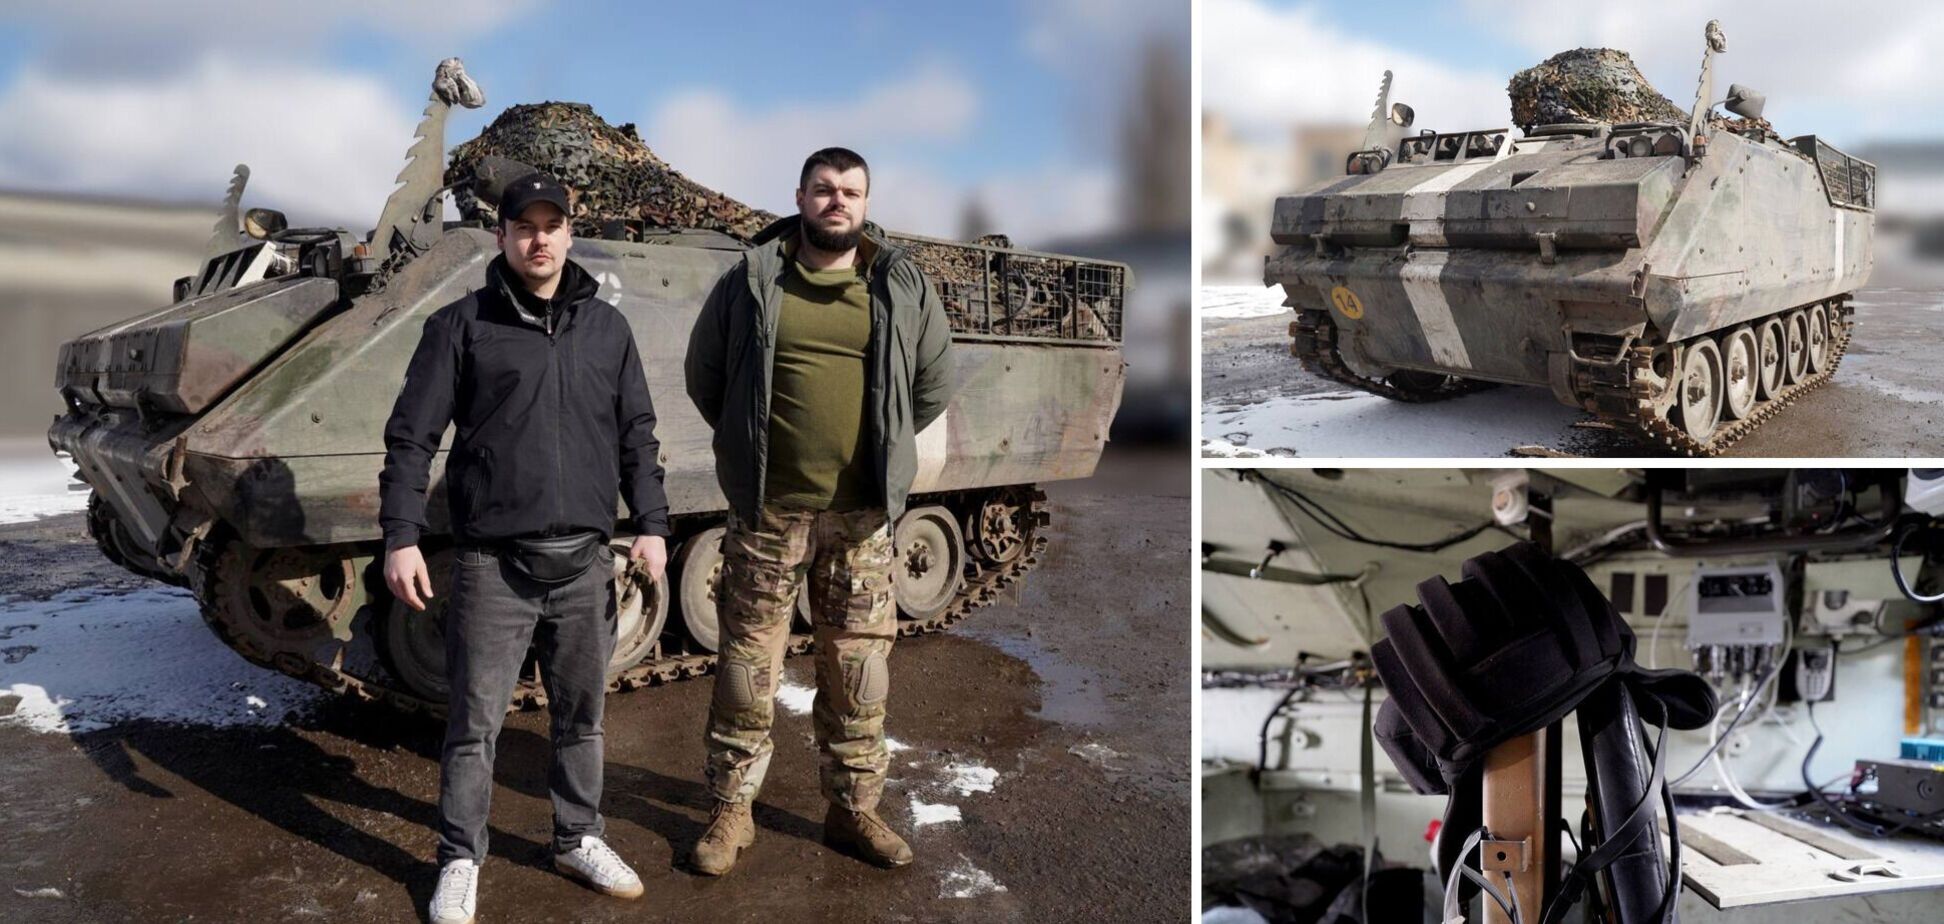 Захисники України отримали від 'Сталевого фронту' комунікаційне обладнання для бронетранспортерів